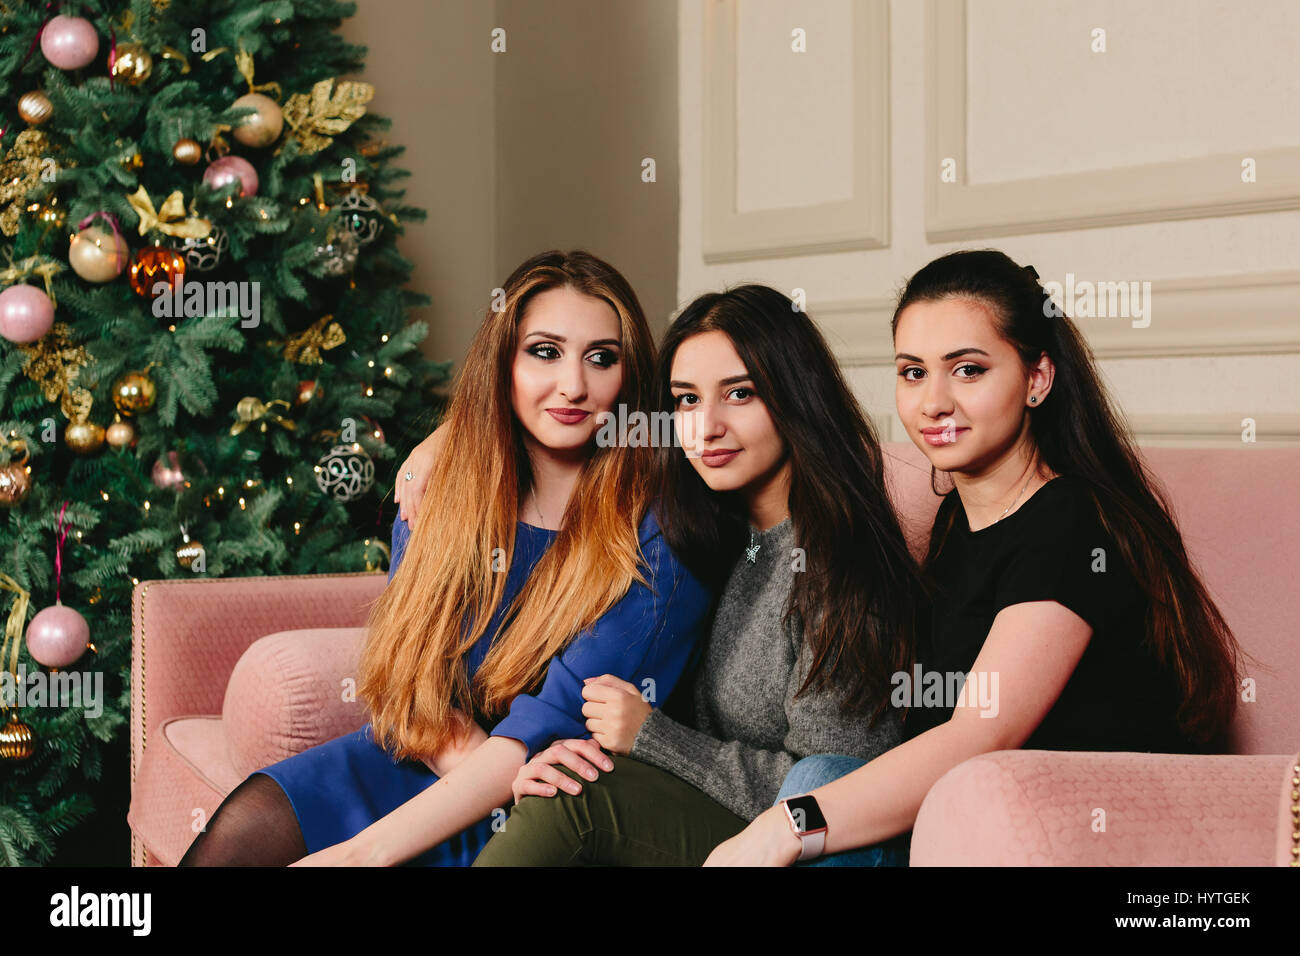 Trois belles jeunes copines sur un canapé près de l'arbre de Noël. Studio portrait horizontal. Banque D'Images